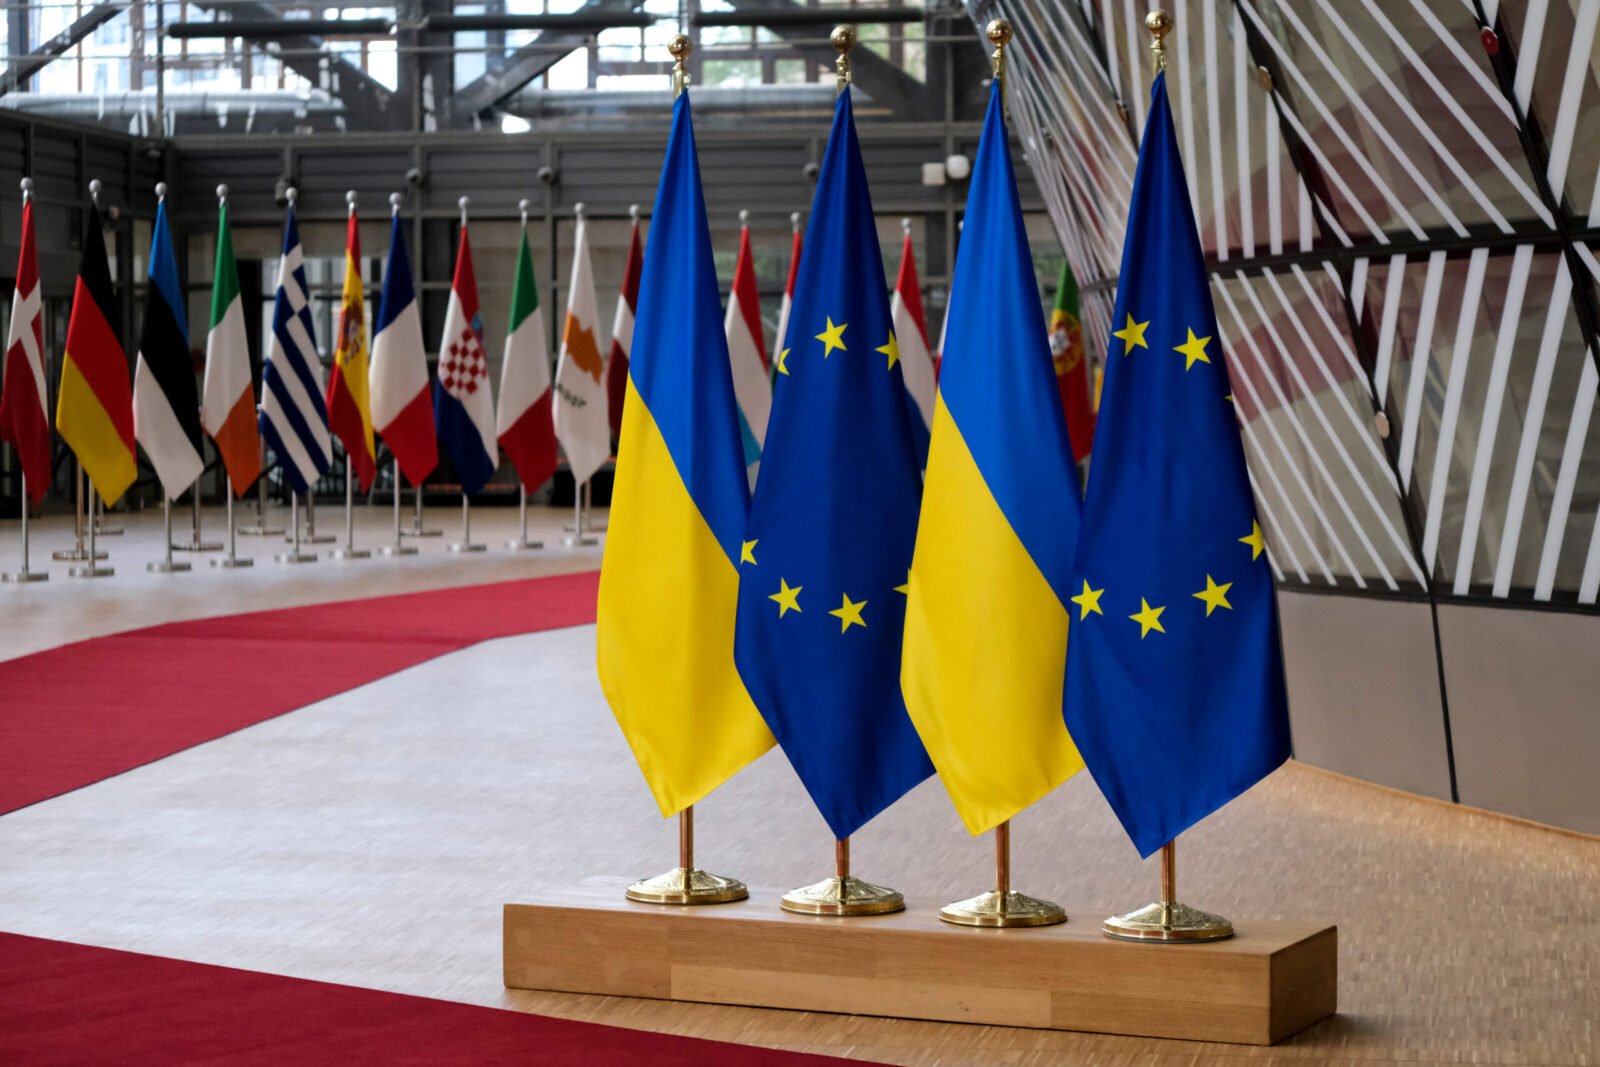 ԵՄ-ն մինչեւ սեպտեմբեր մտադիր է կազմել Ուկրաինայի օգնության նոր փաթեթ 8 միլիարդ եվրոյի չափով. Reuters